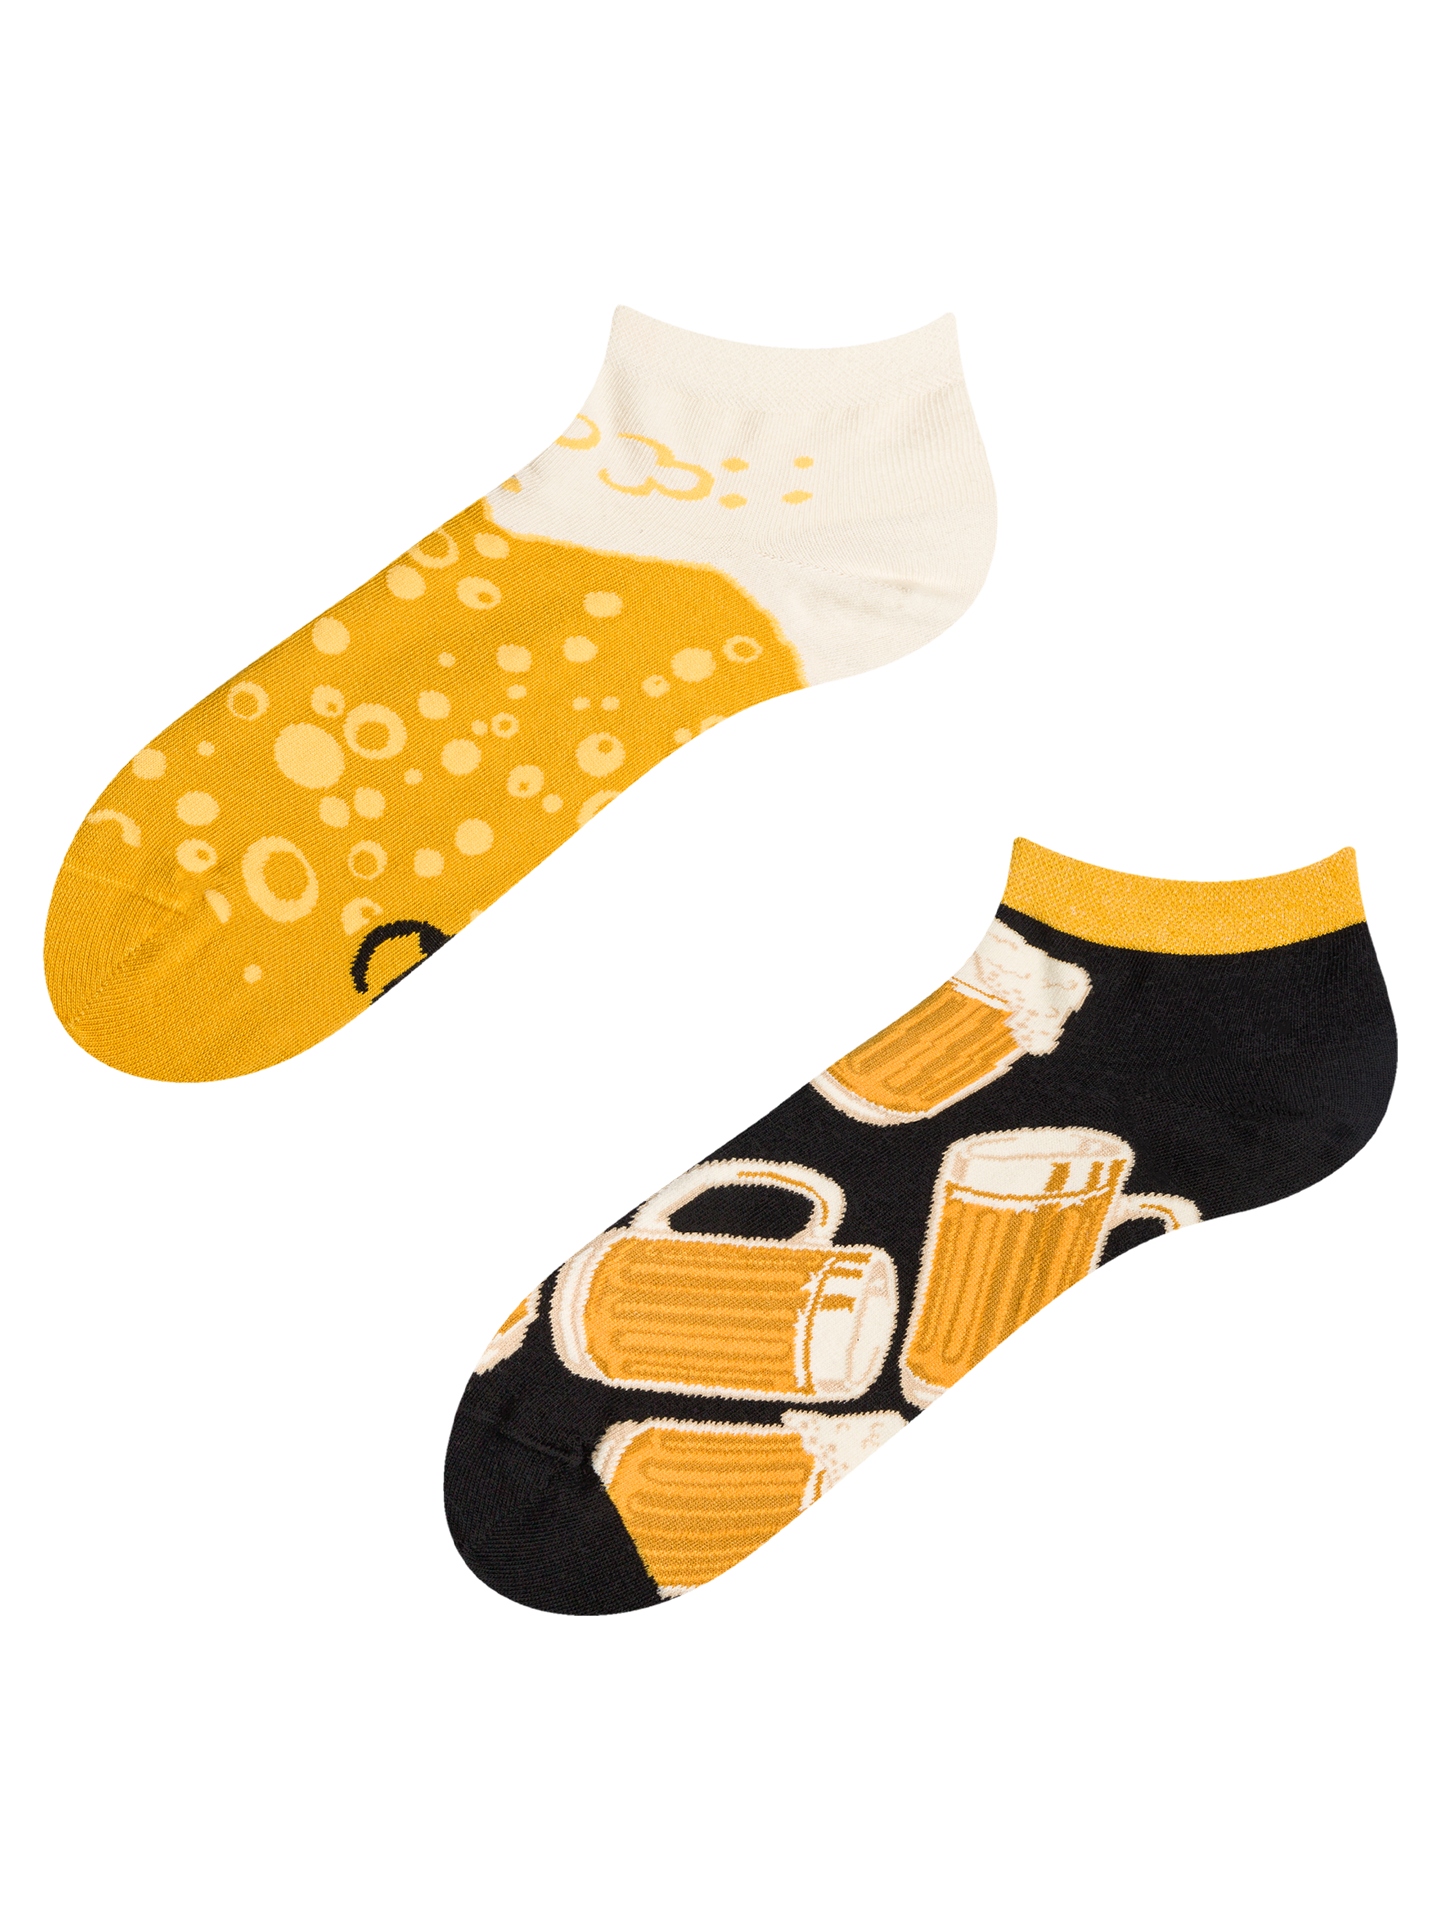 Ankle Socks Draft Beer